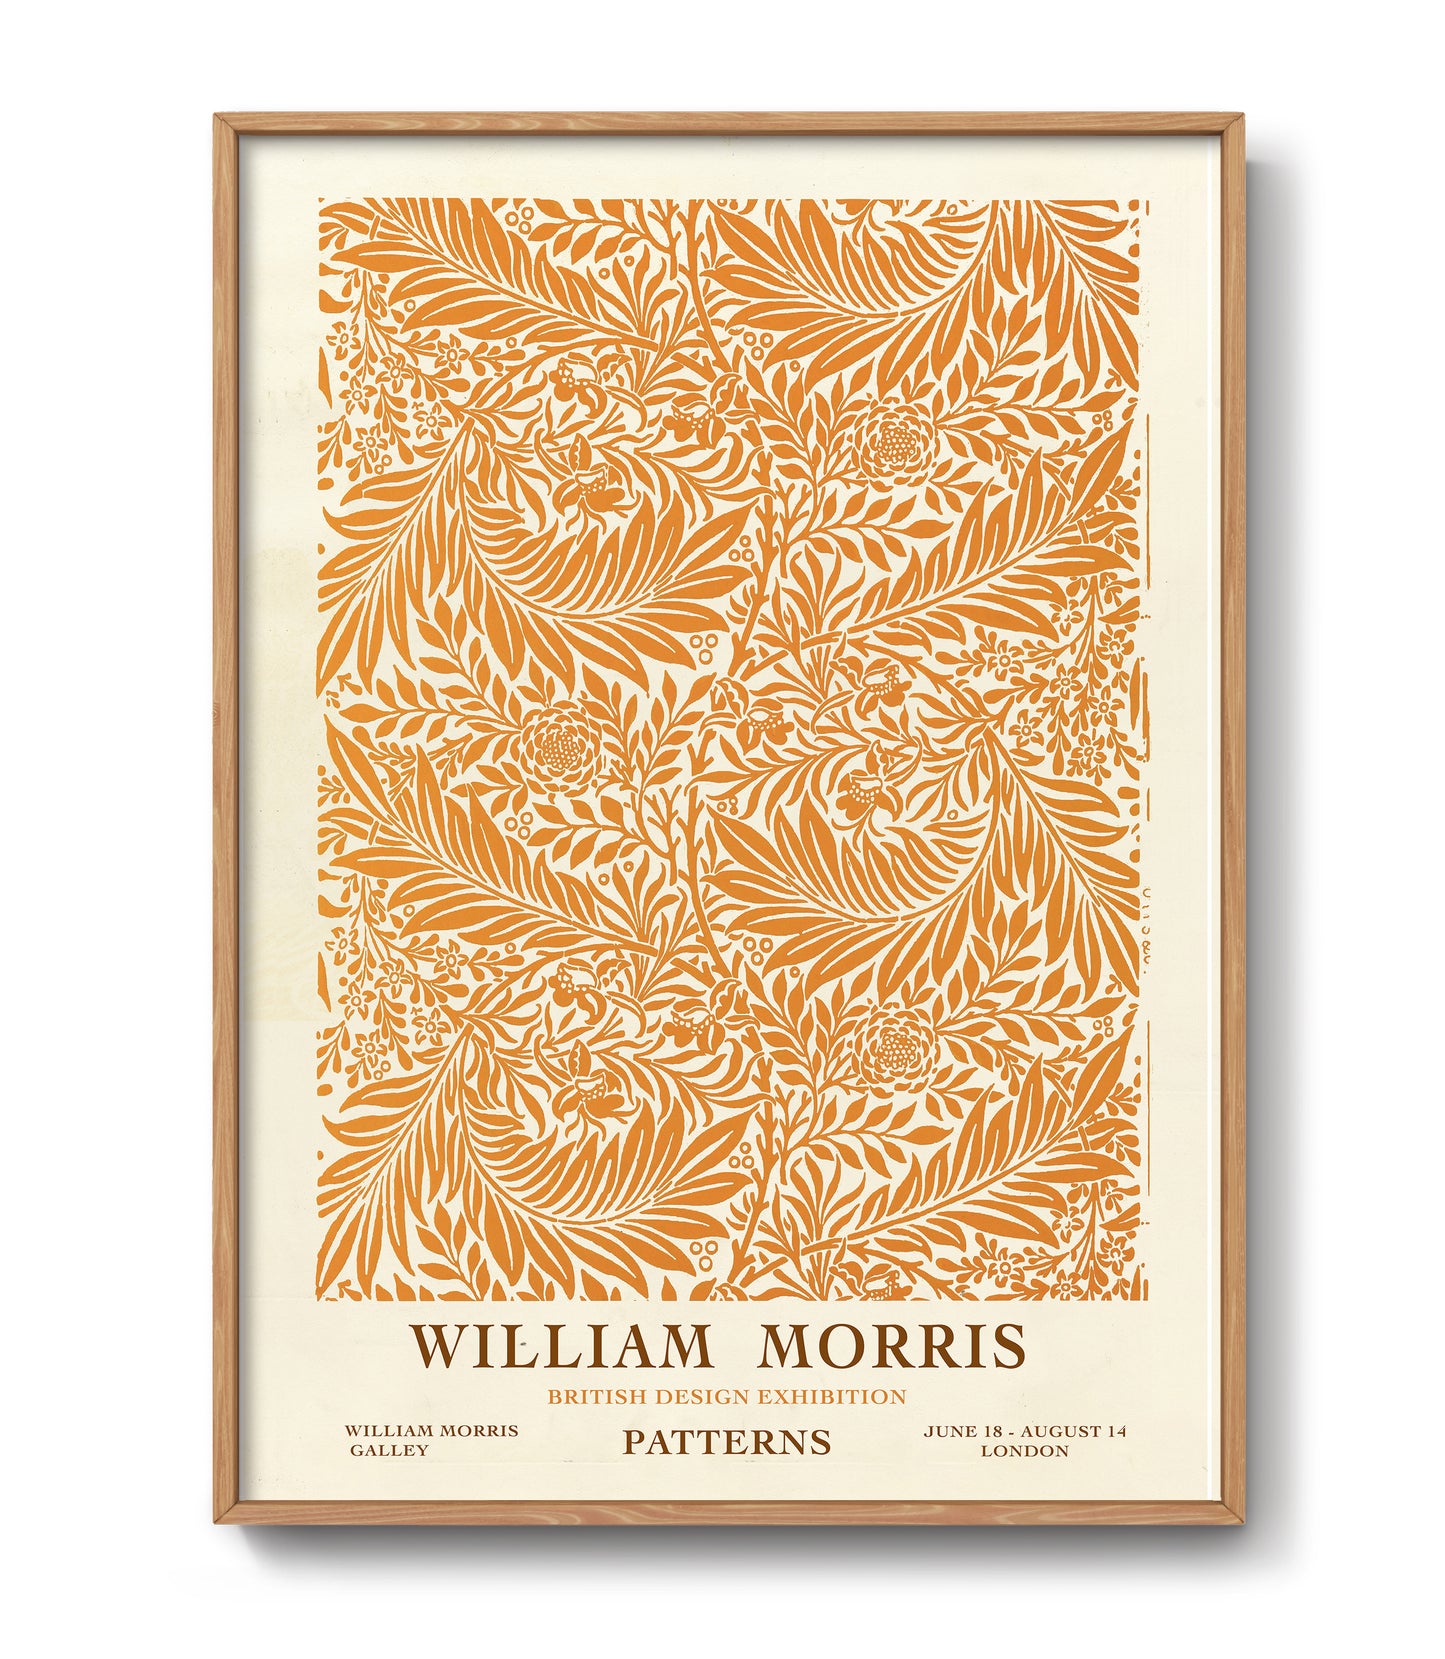 William Morris exhibition poster. Orange